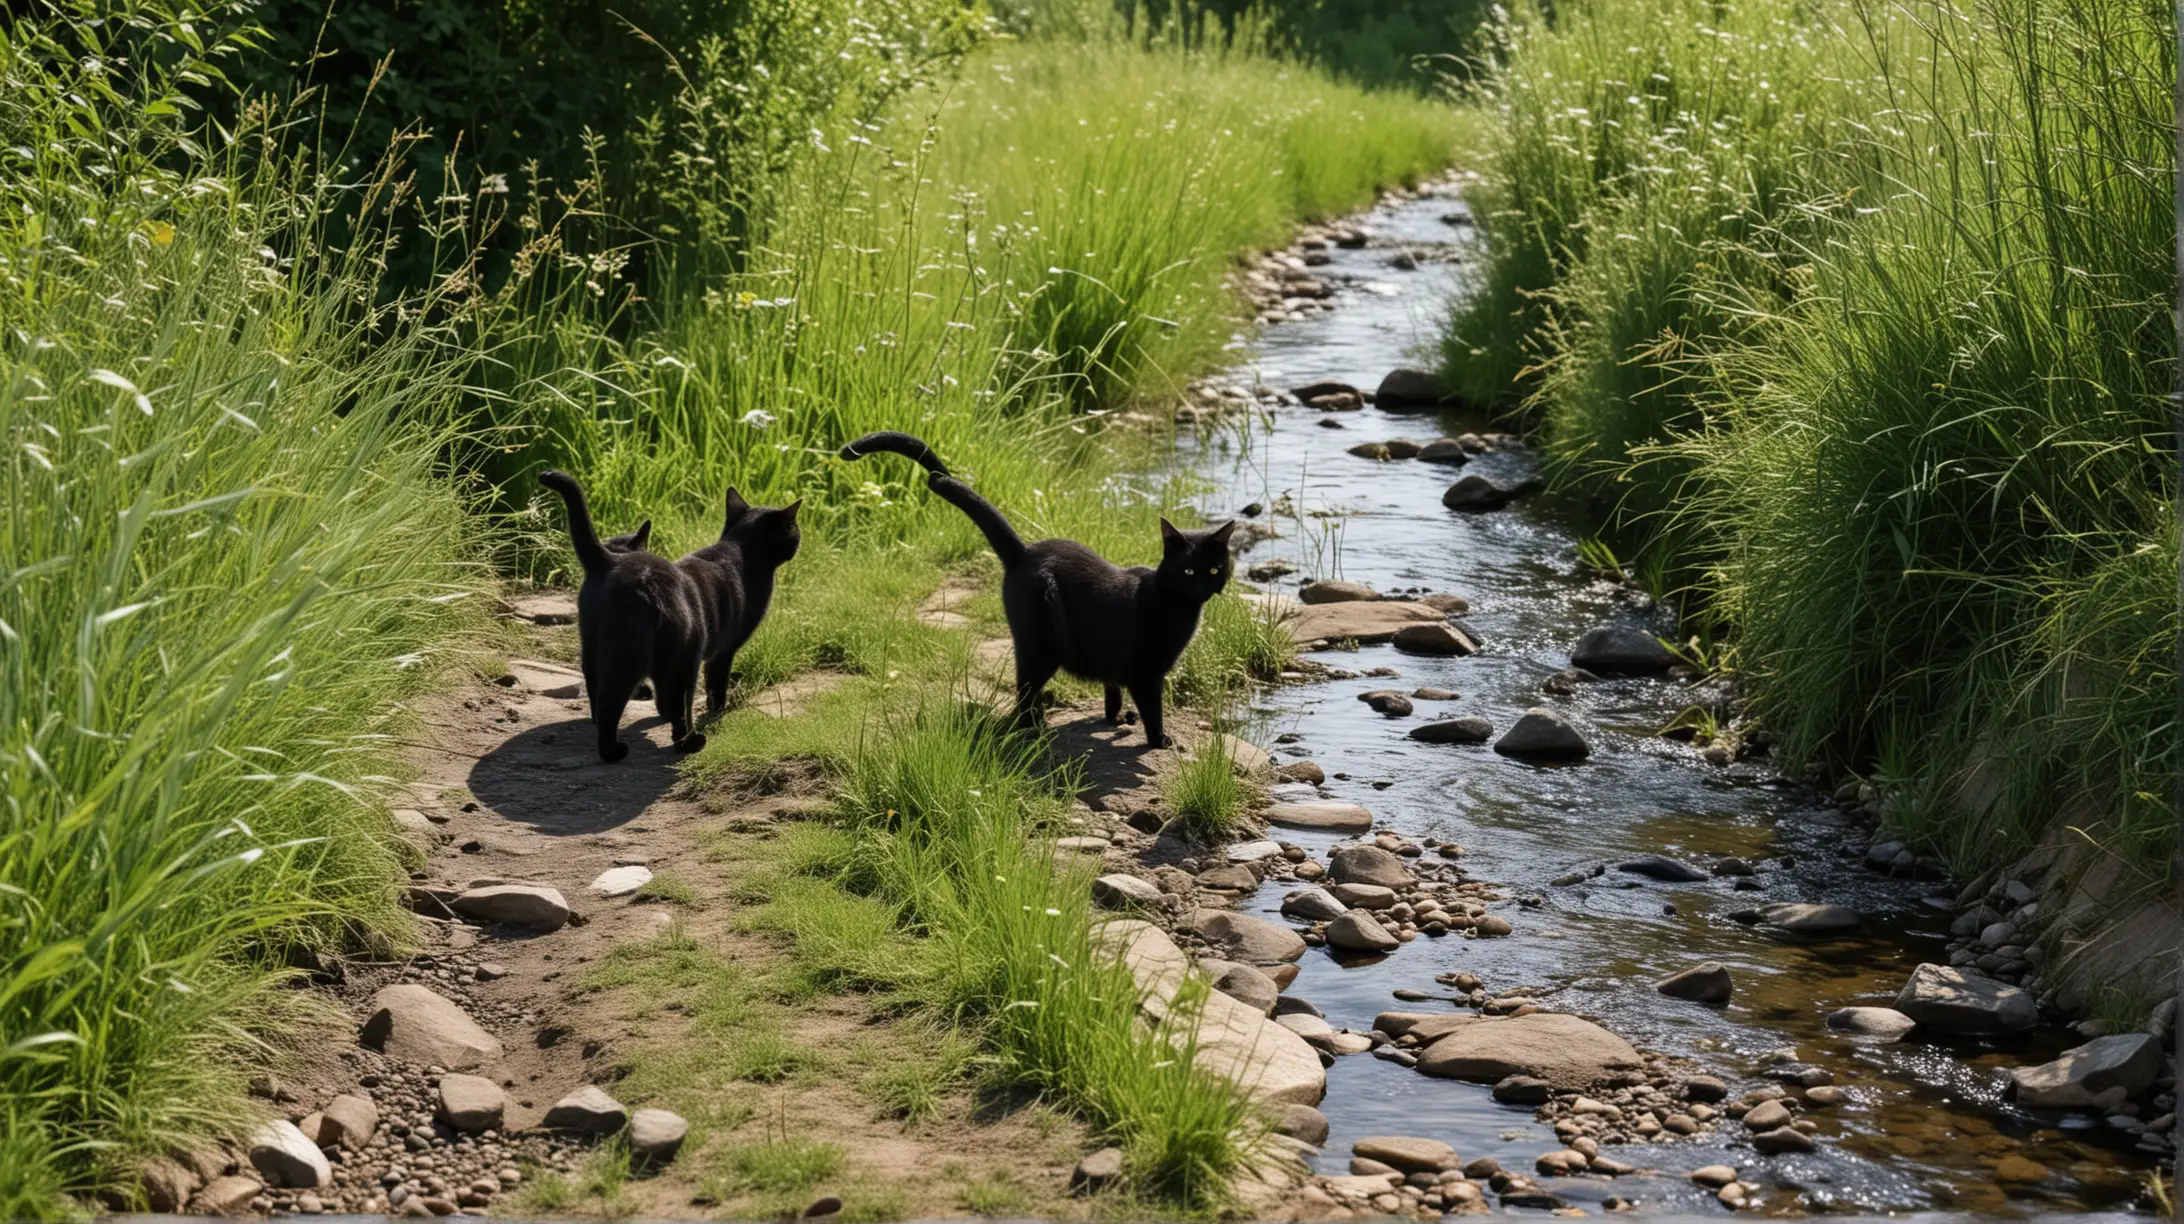 Two Black Cats Walking Along Stream in Summer Landscape